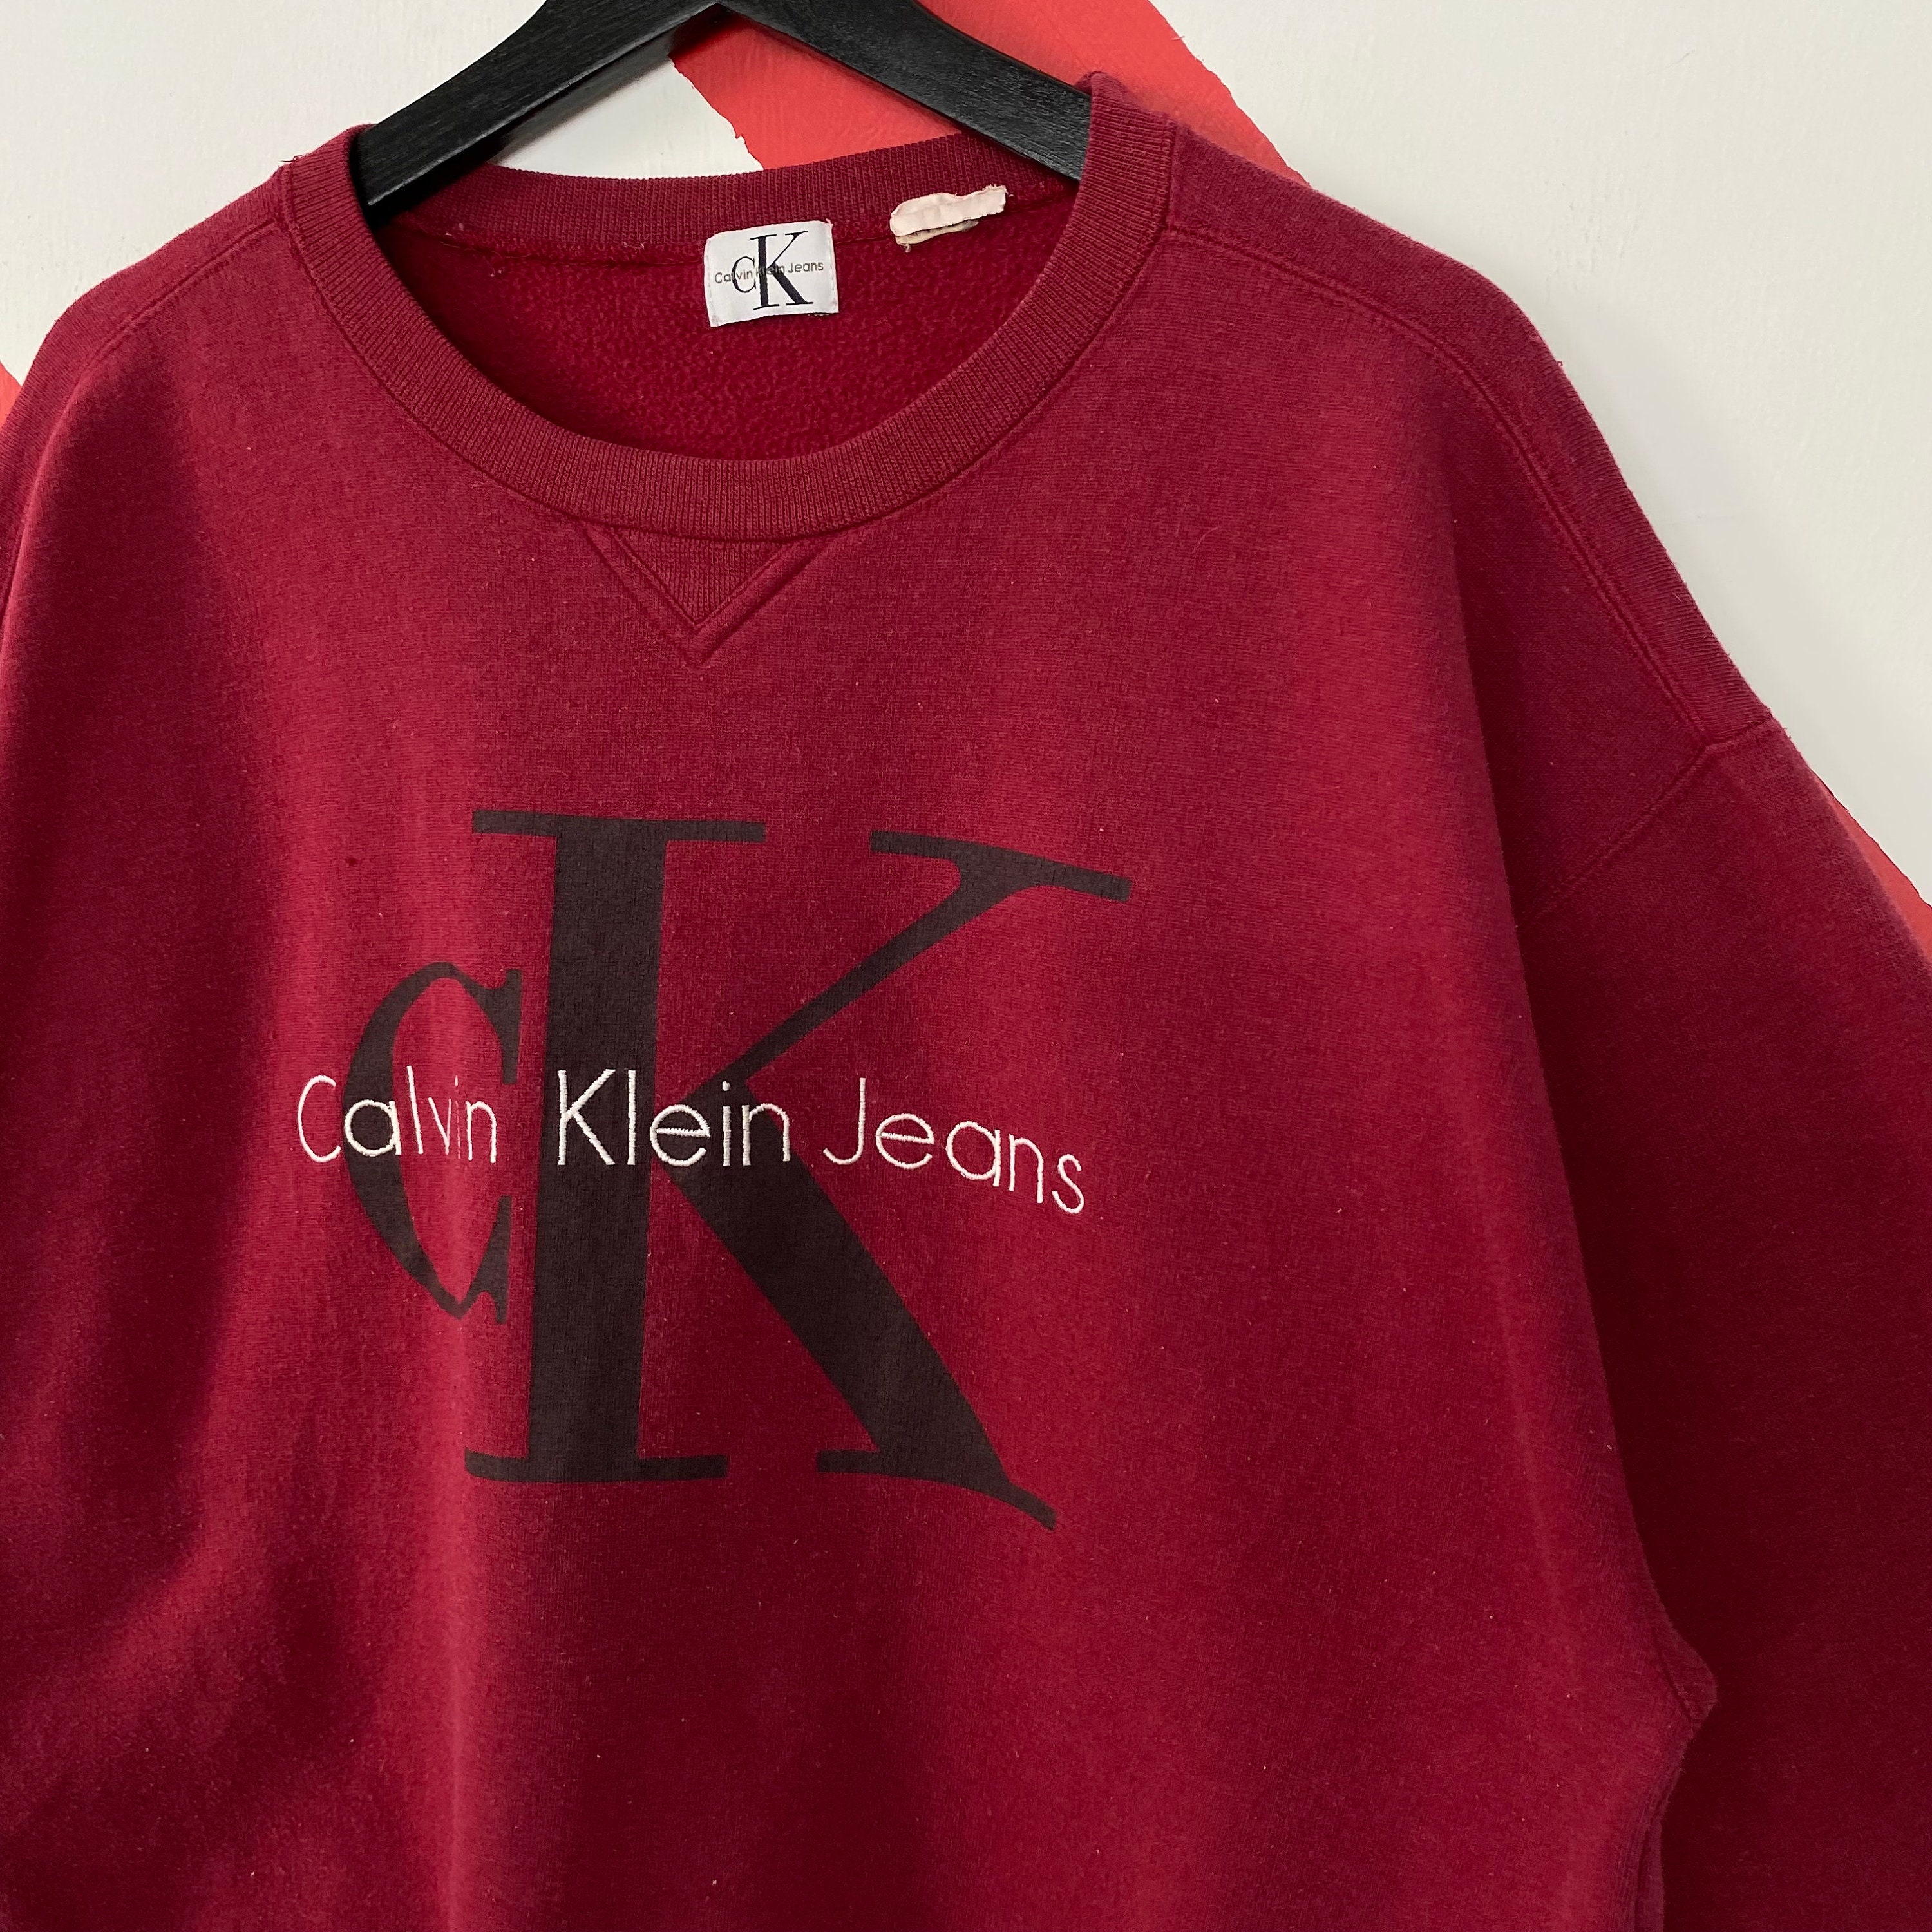 CALVIN KLEIN JEANS - Men's regular winter sweatshirt with 1978